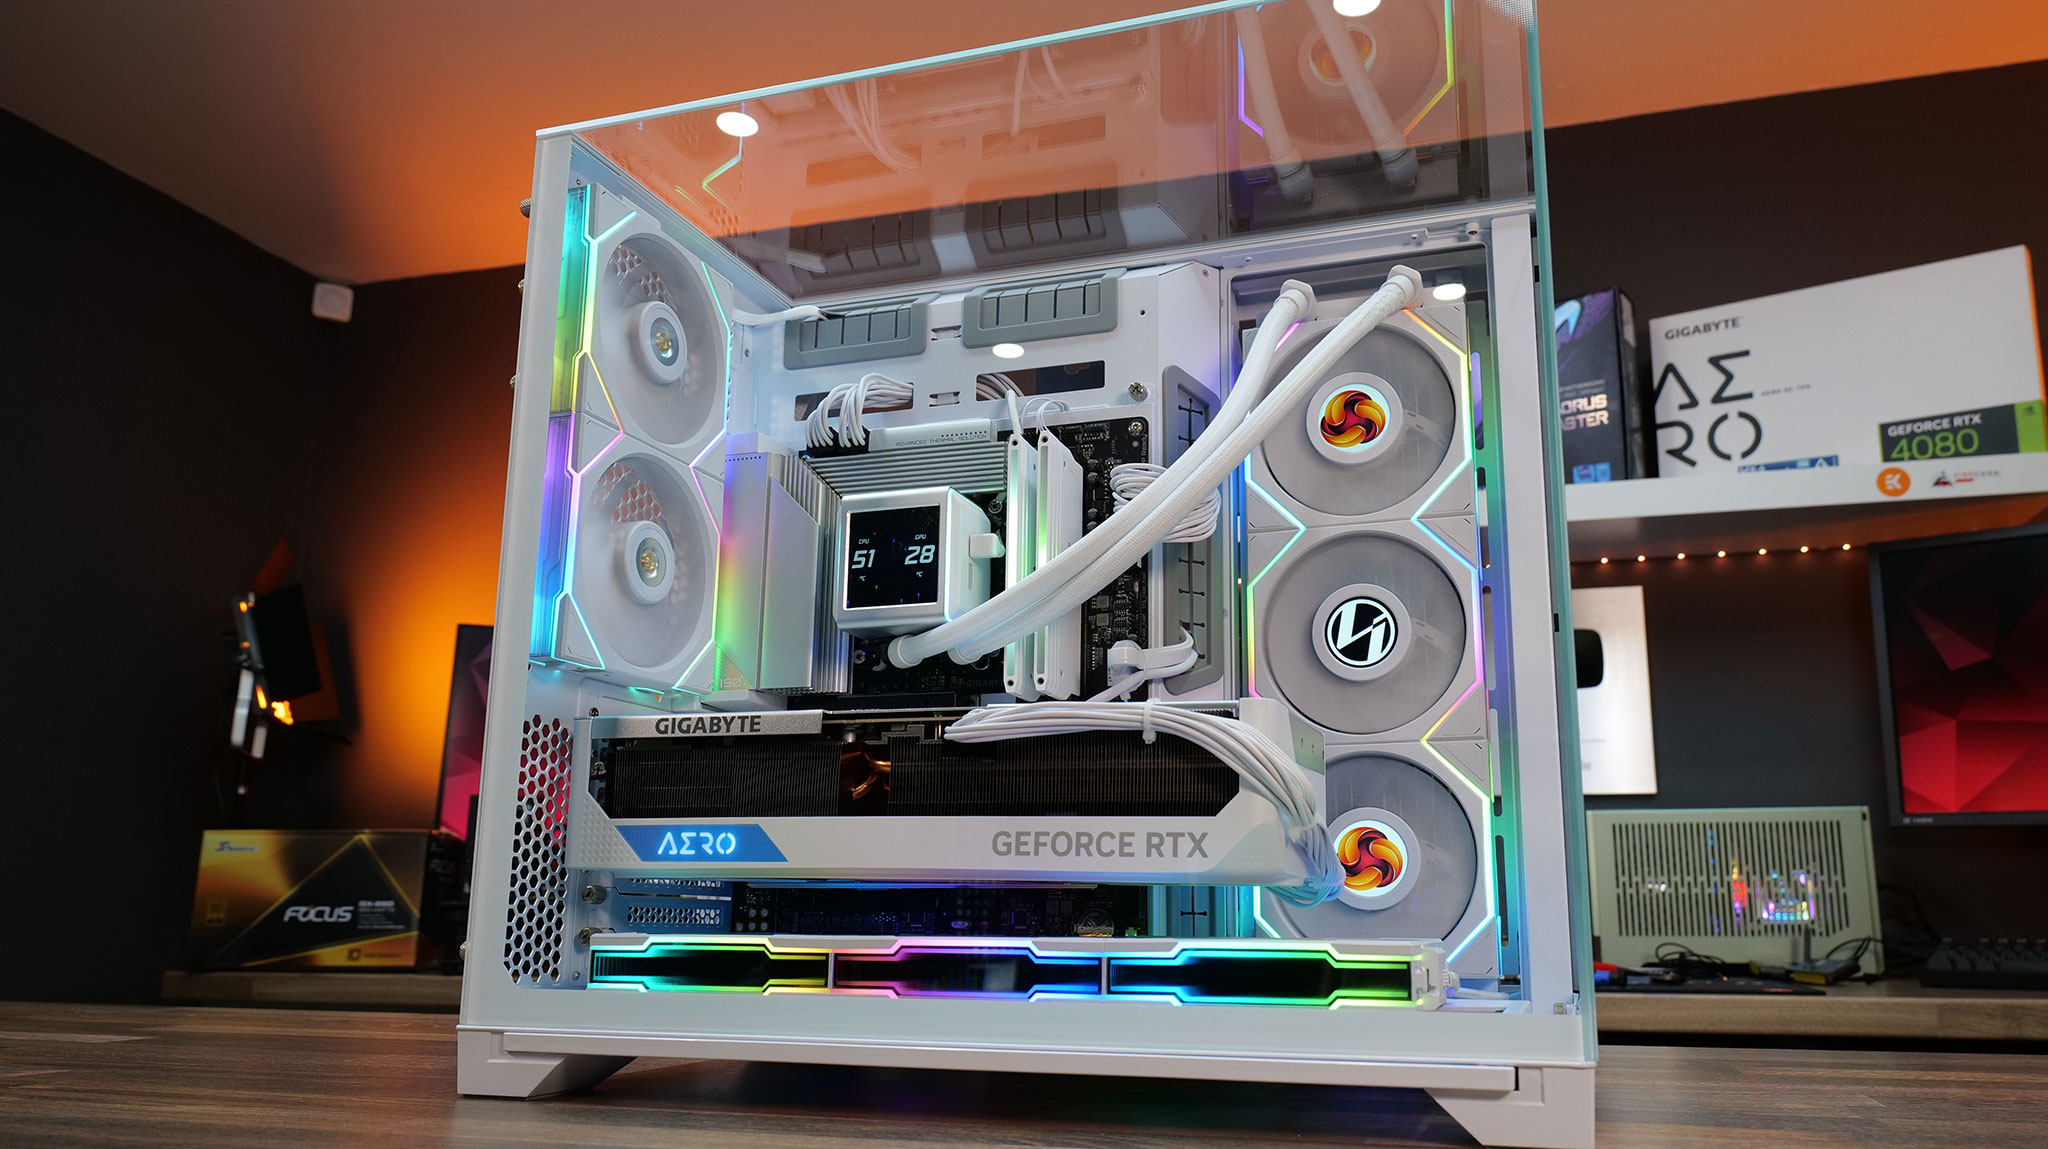 Top Tech PC Build - Lian Li O11 Dynamic XL White Gaming PC Re